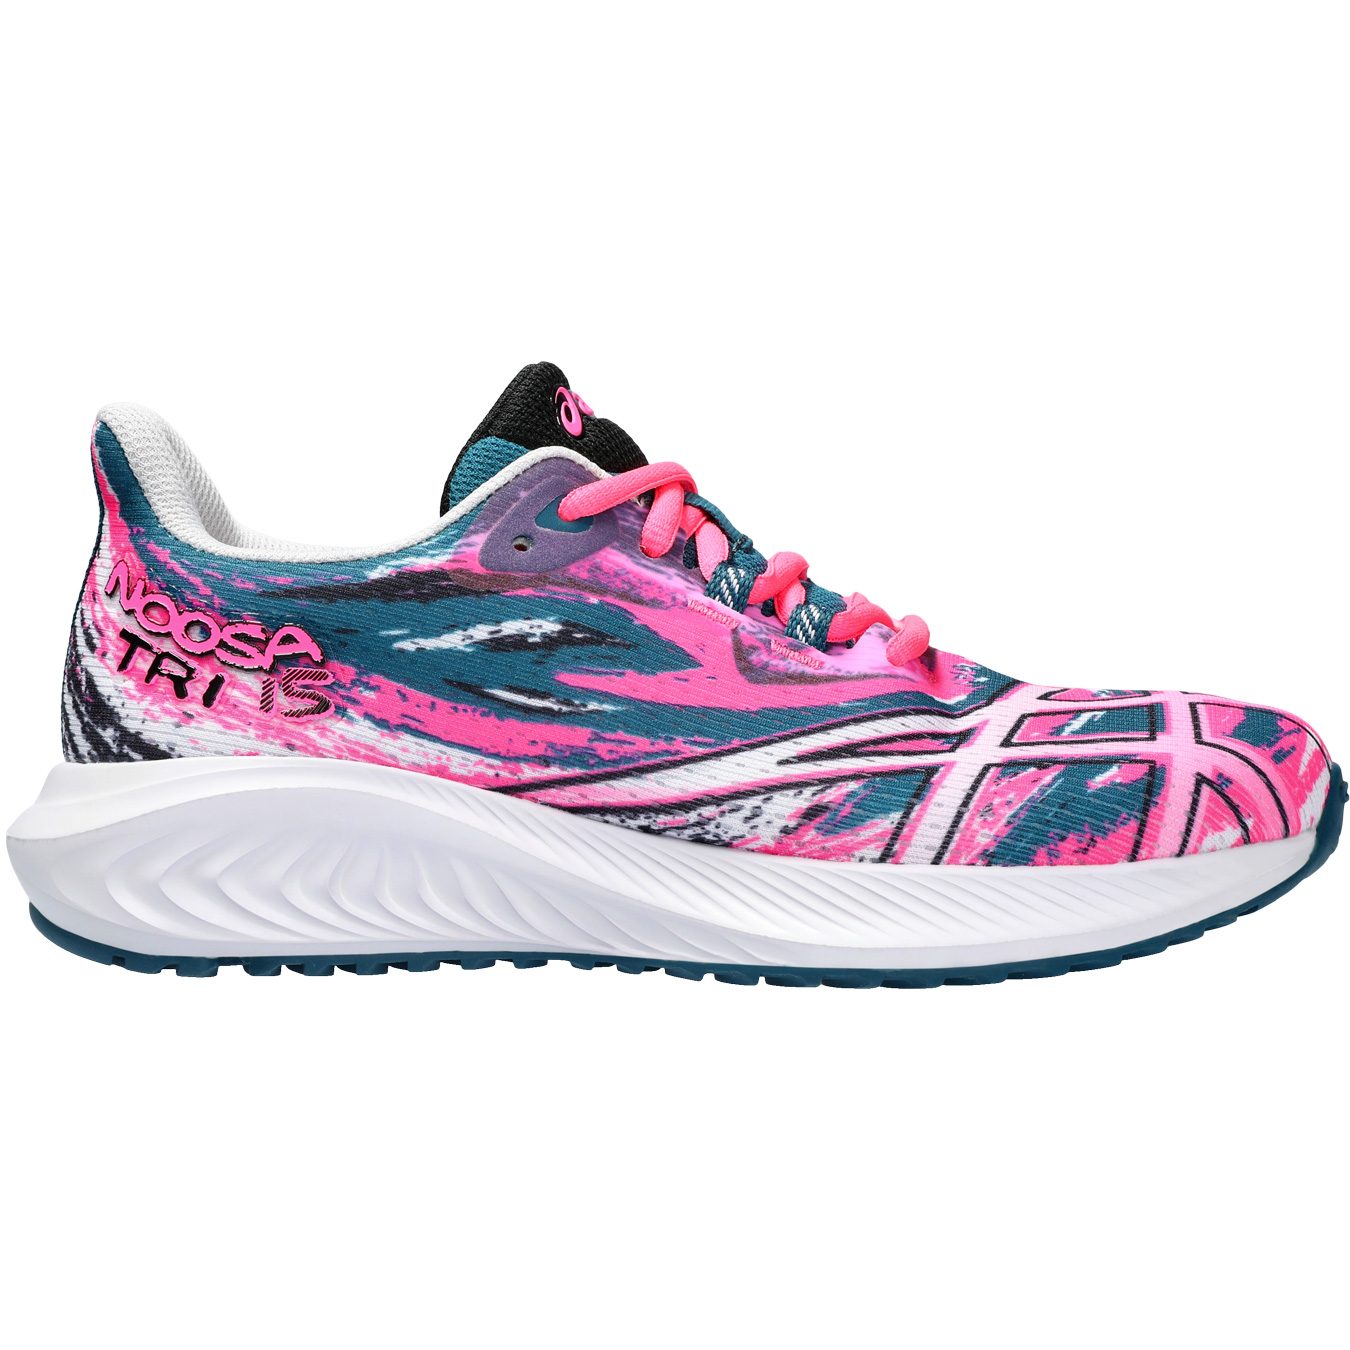 ASICS - Gel-Noosa hot Bittl 15 TRI Shop Sport Running Shoes pink GS at Kids